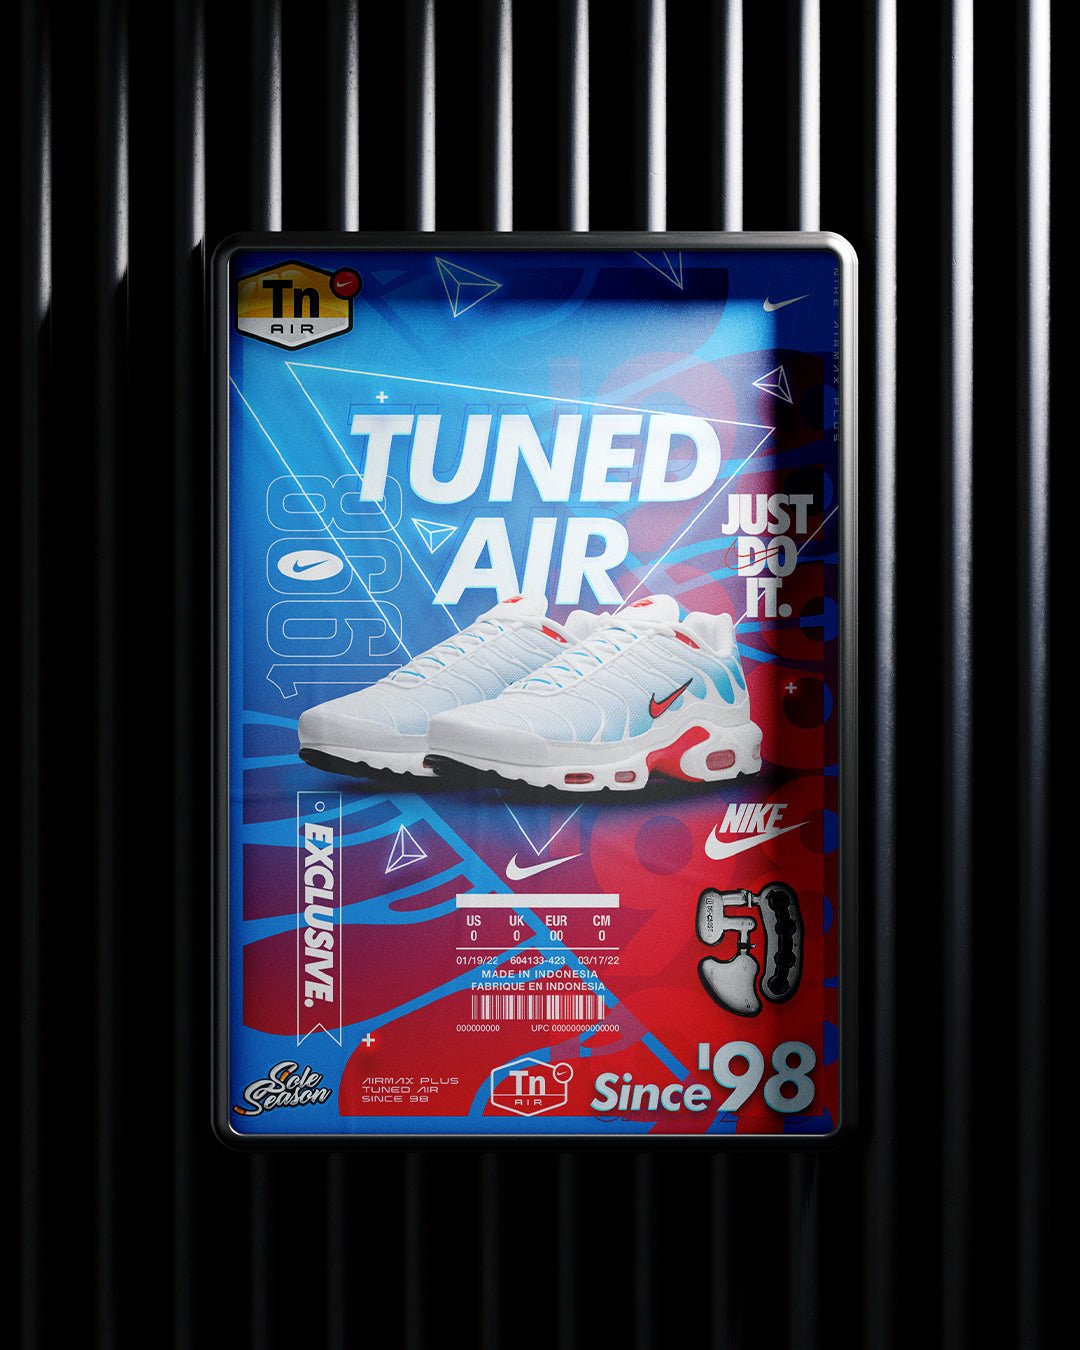 Nike Tn - Retro Tide 'Tuned Since '98' - A3 Poster